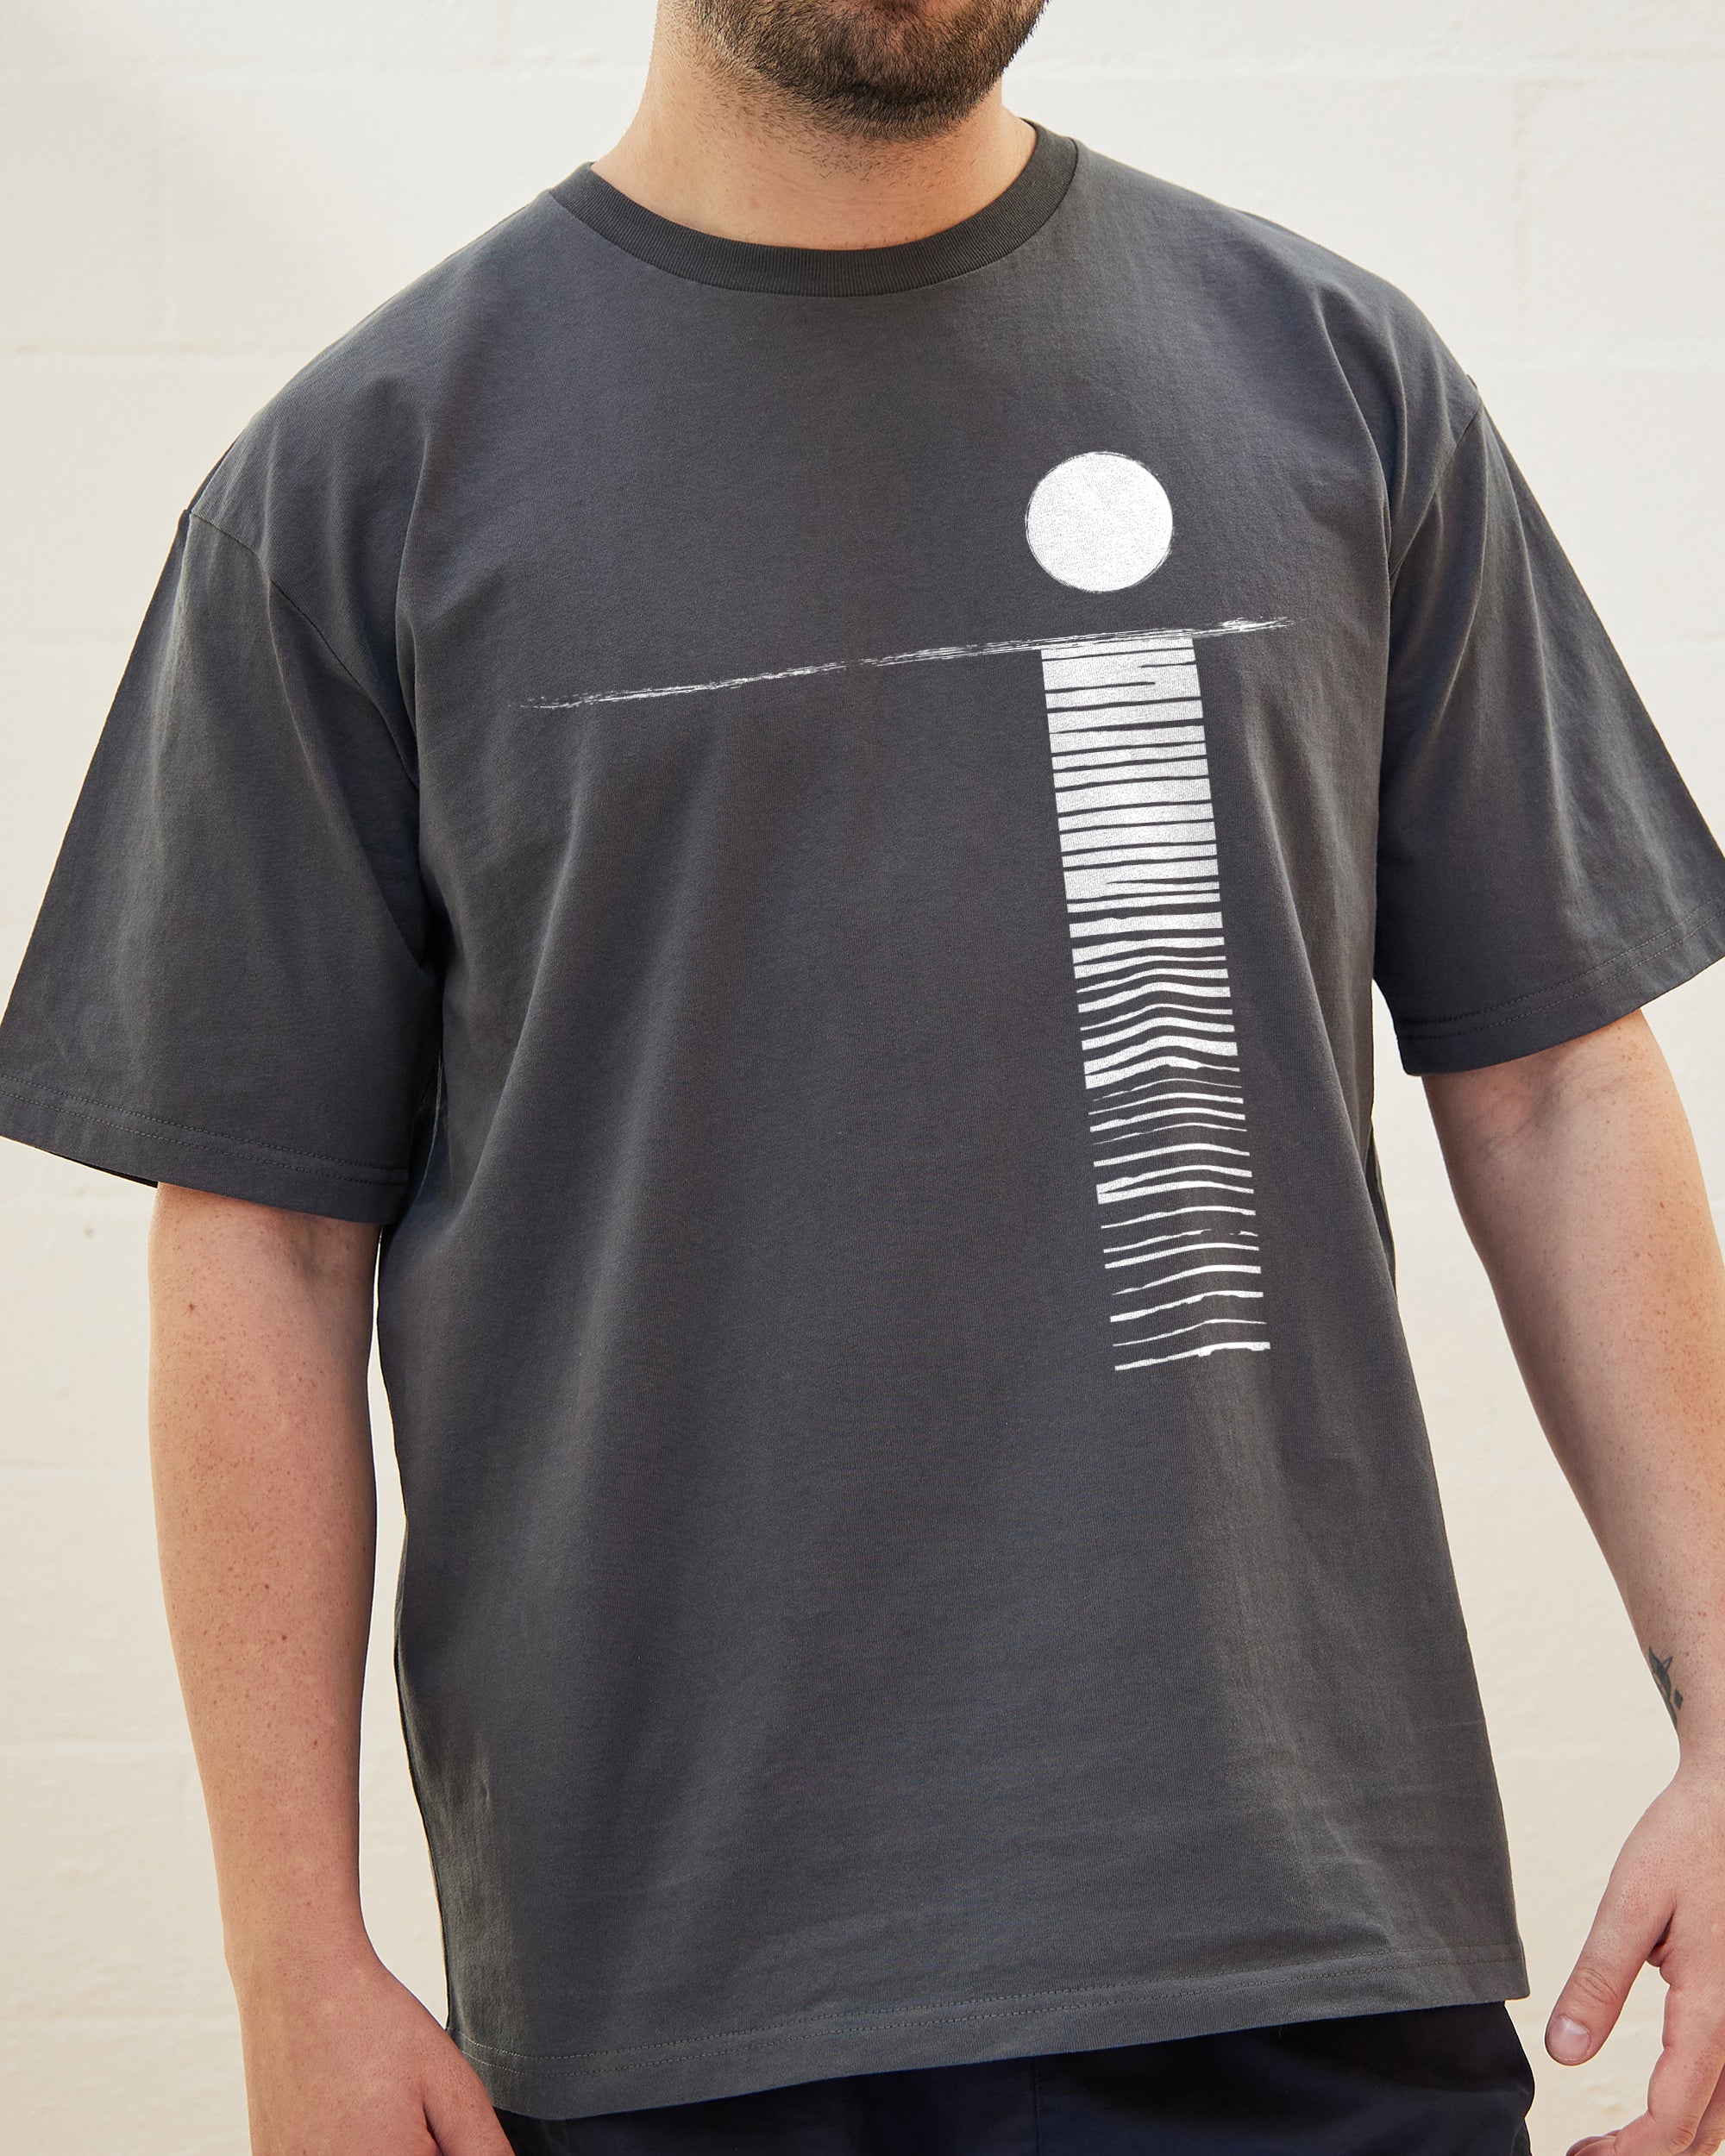 Moonlight Sun T-Shirt Australia Online Charcoal